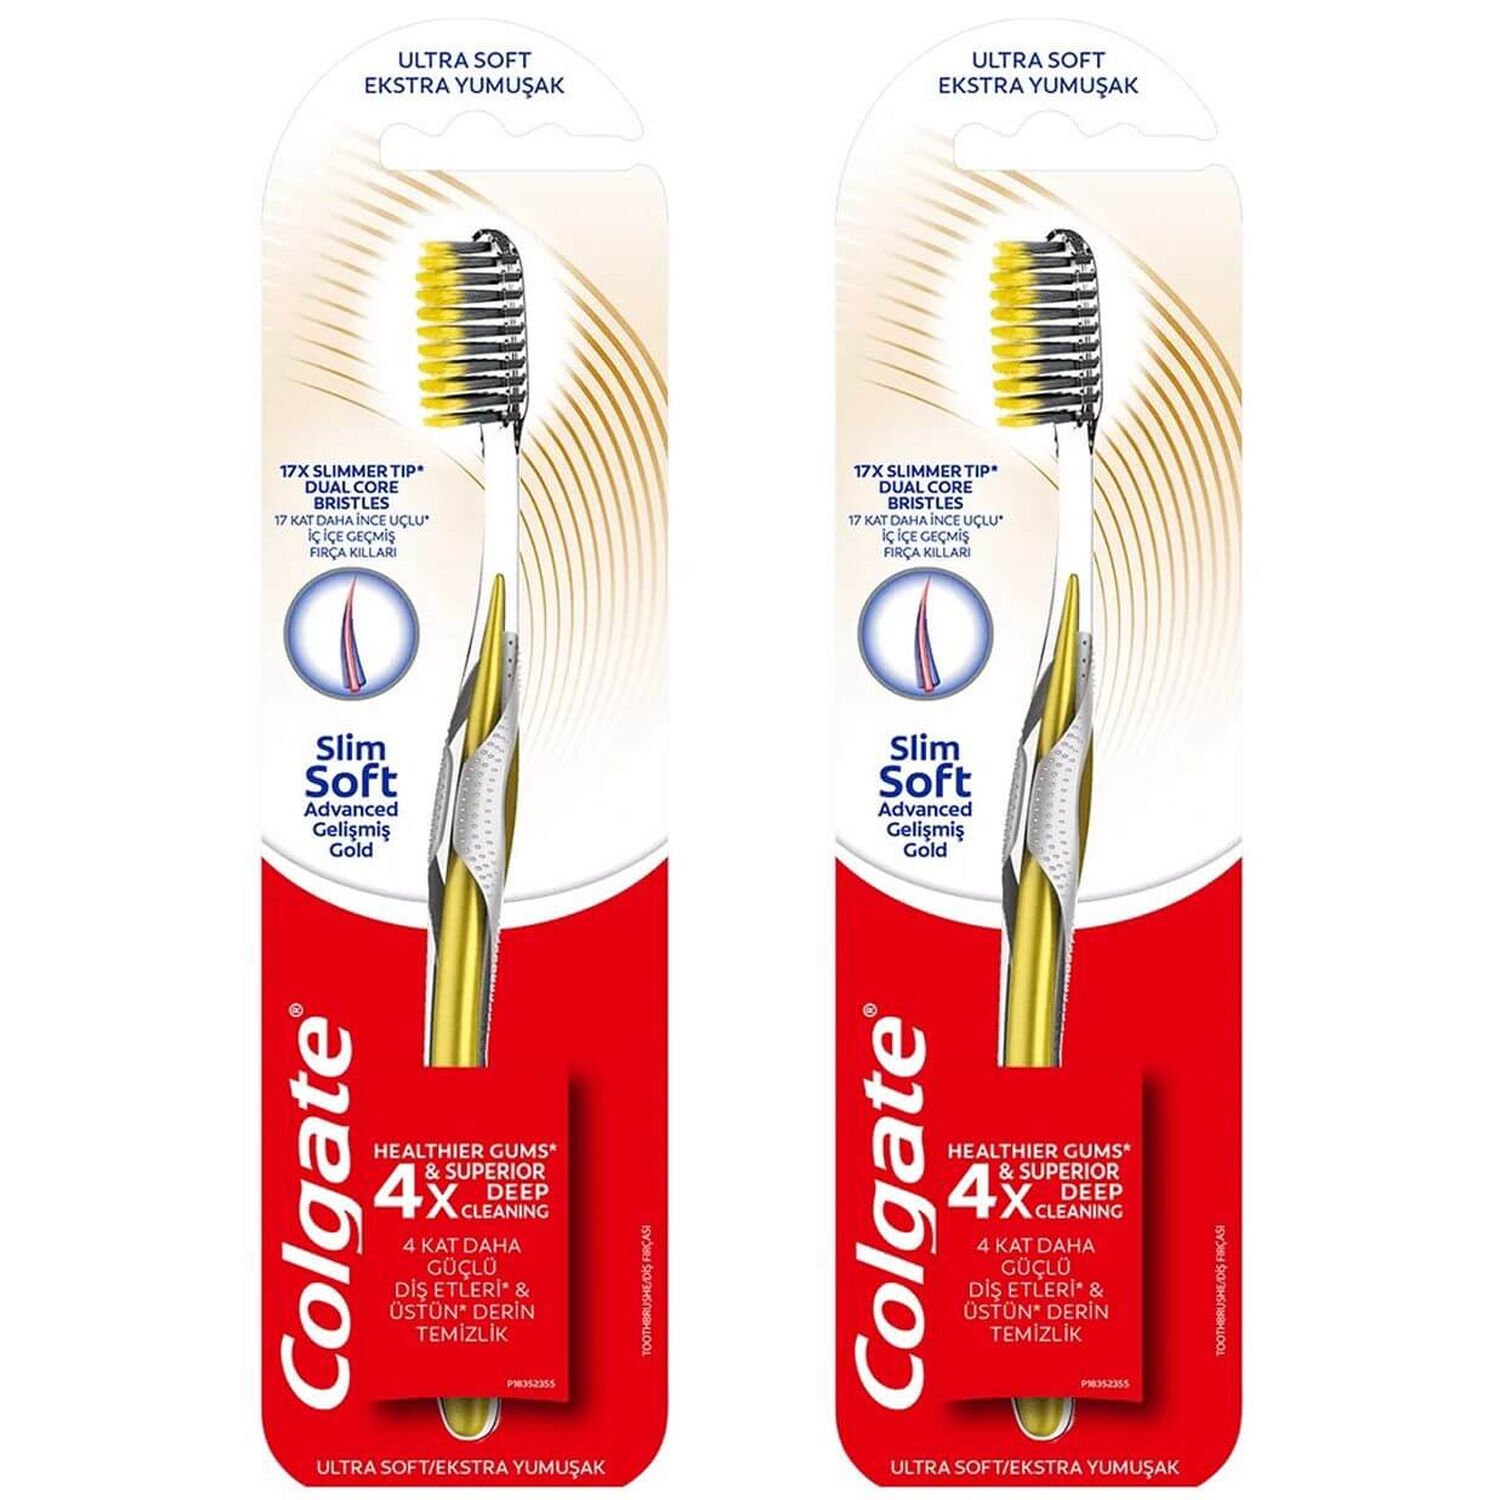 Colgate Mikro İnce Gelişmiş Gold Charcoal Ekstra Yumuşak Diş Fırçası 2 ADET